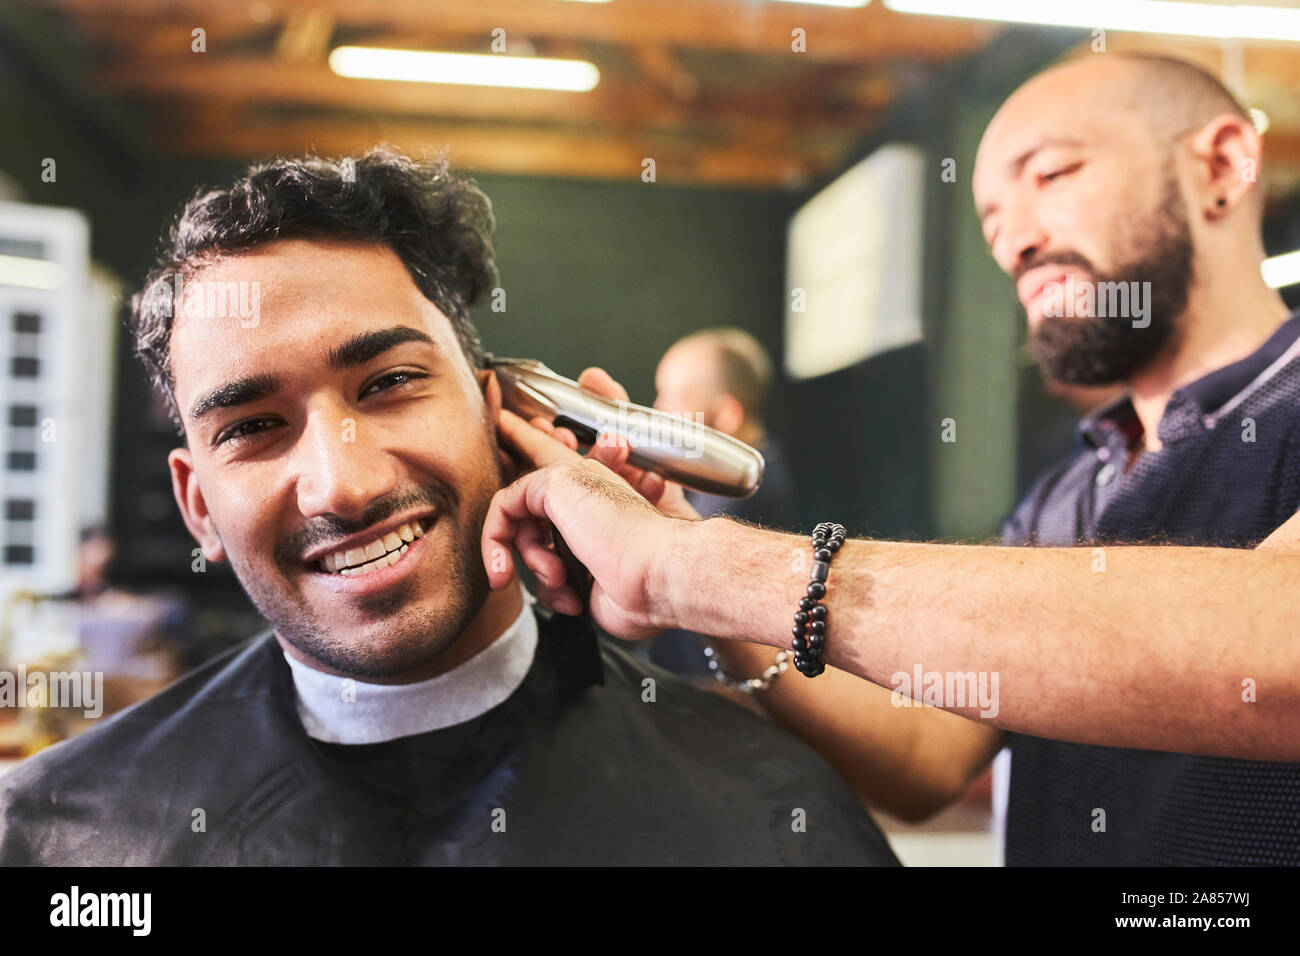 Portrait of smiling young man coupe au salon de coiffure Banque D'Images